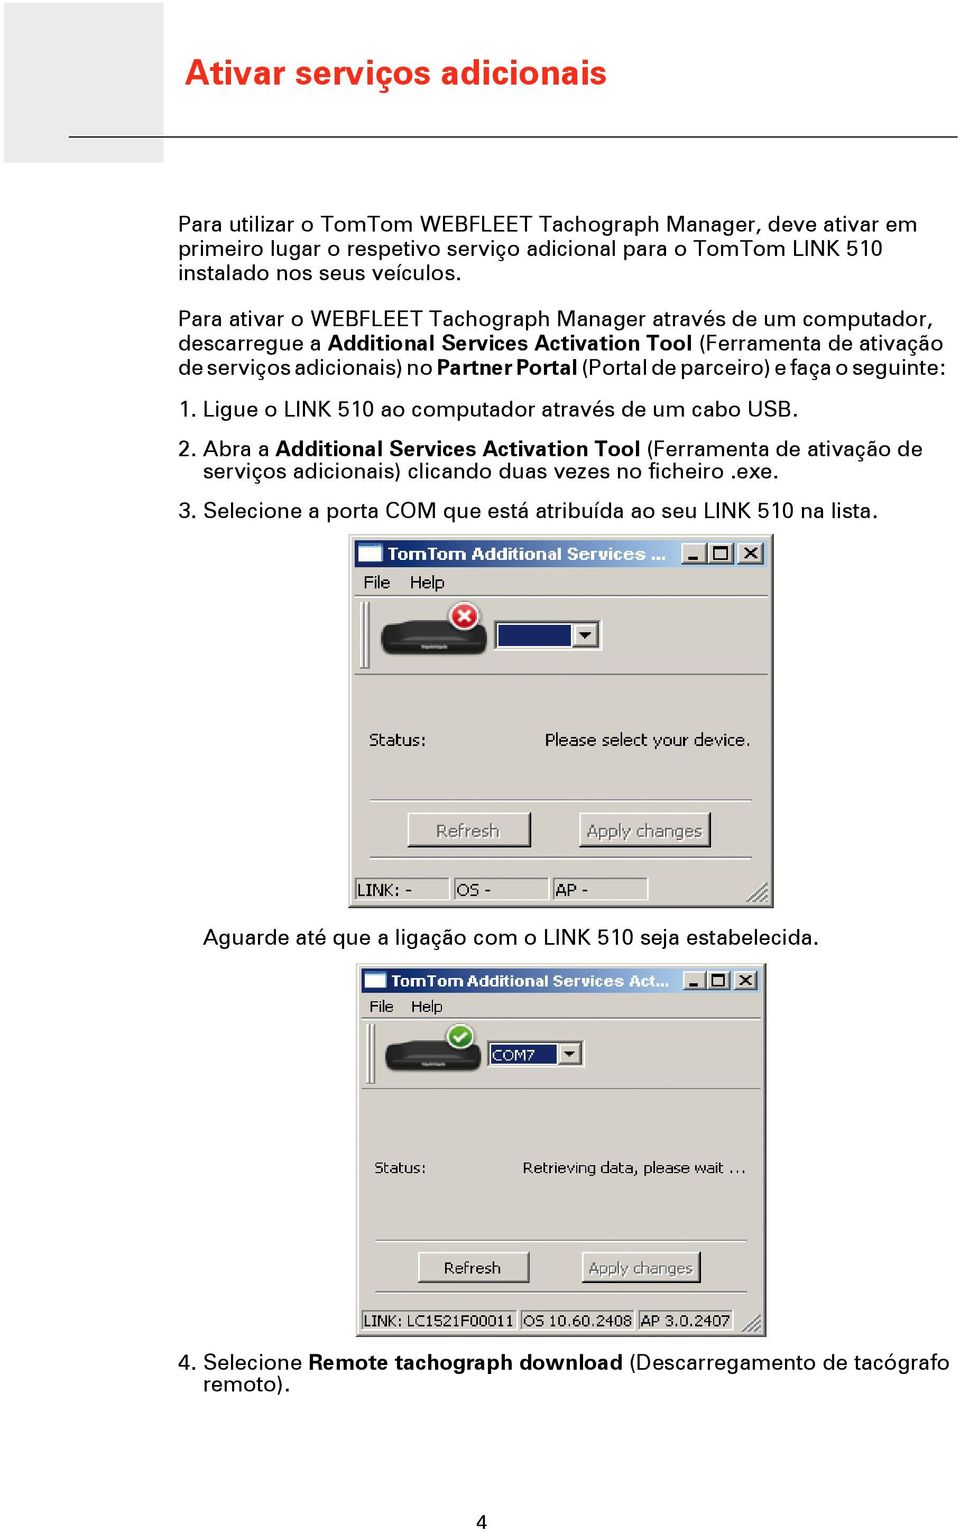 Para ativar o WEBFLEET Tachograph Manager através de um computador, descarregue a Additional Services Activation Tool (Ferramenta de ativação de serviços adicionais) no Partner Portal (Portal de